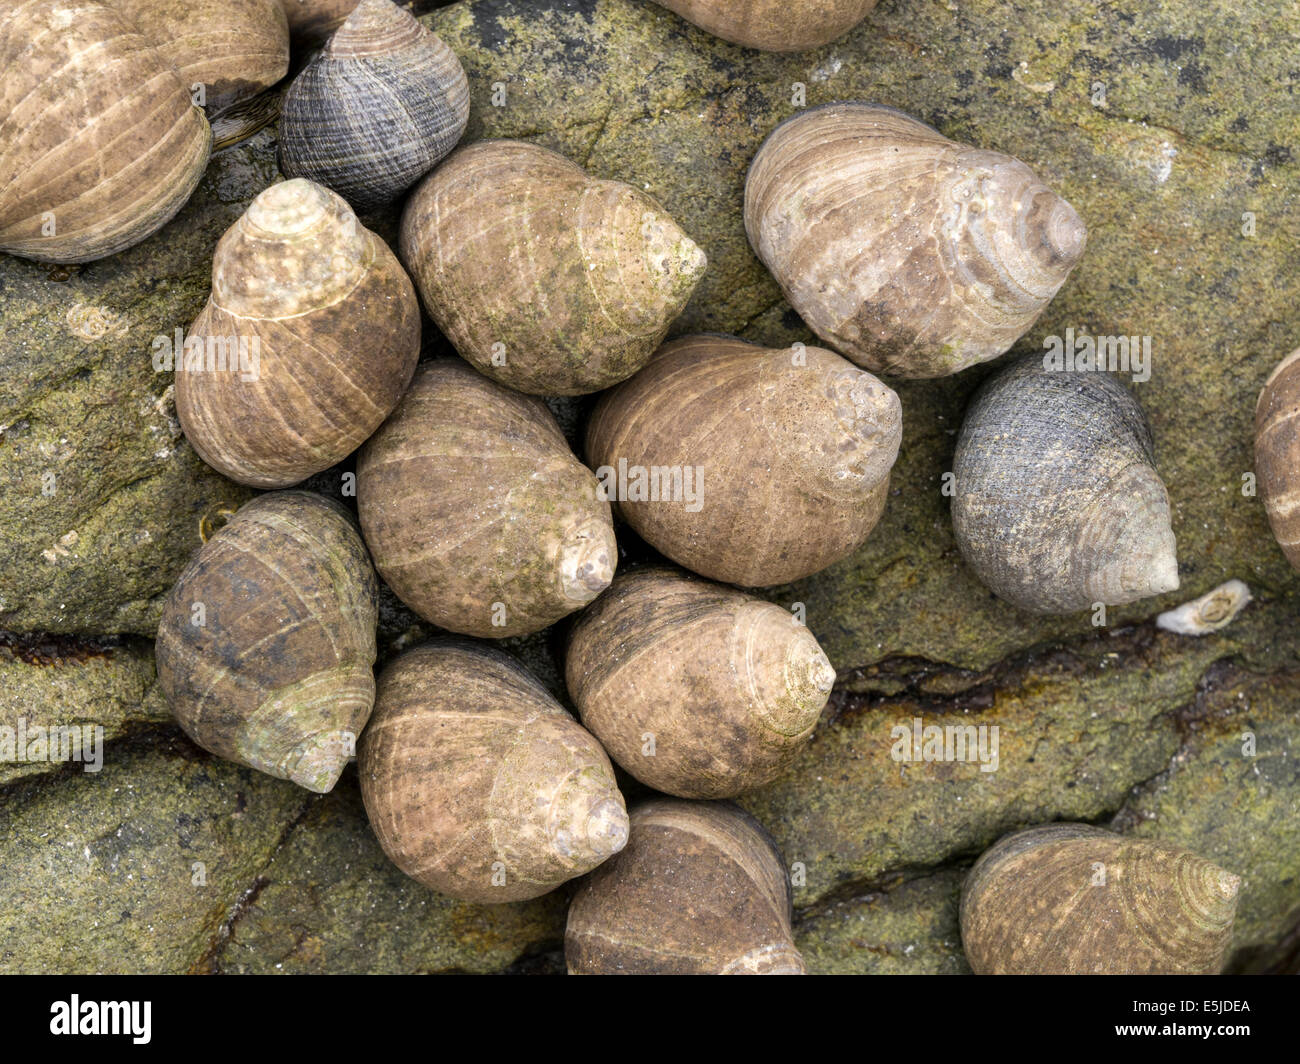 Common Winkle Littorina littorea sea snail marine gastropod mollusc colony, Scotland, UK Stock Photo